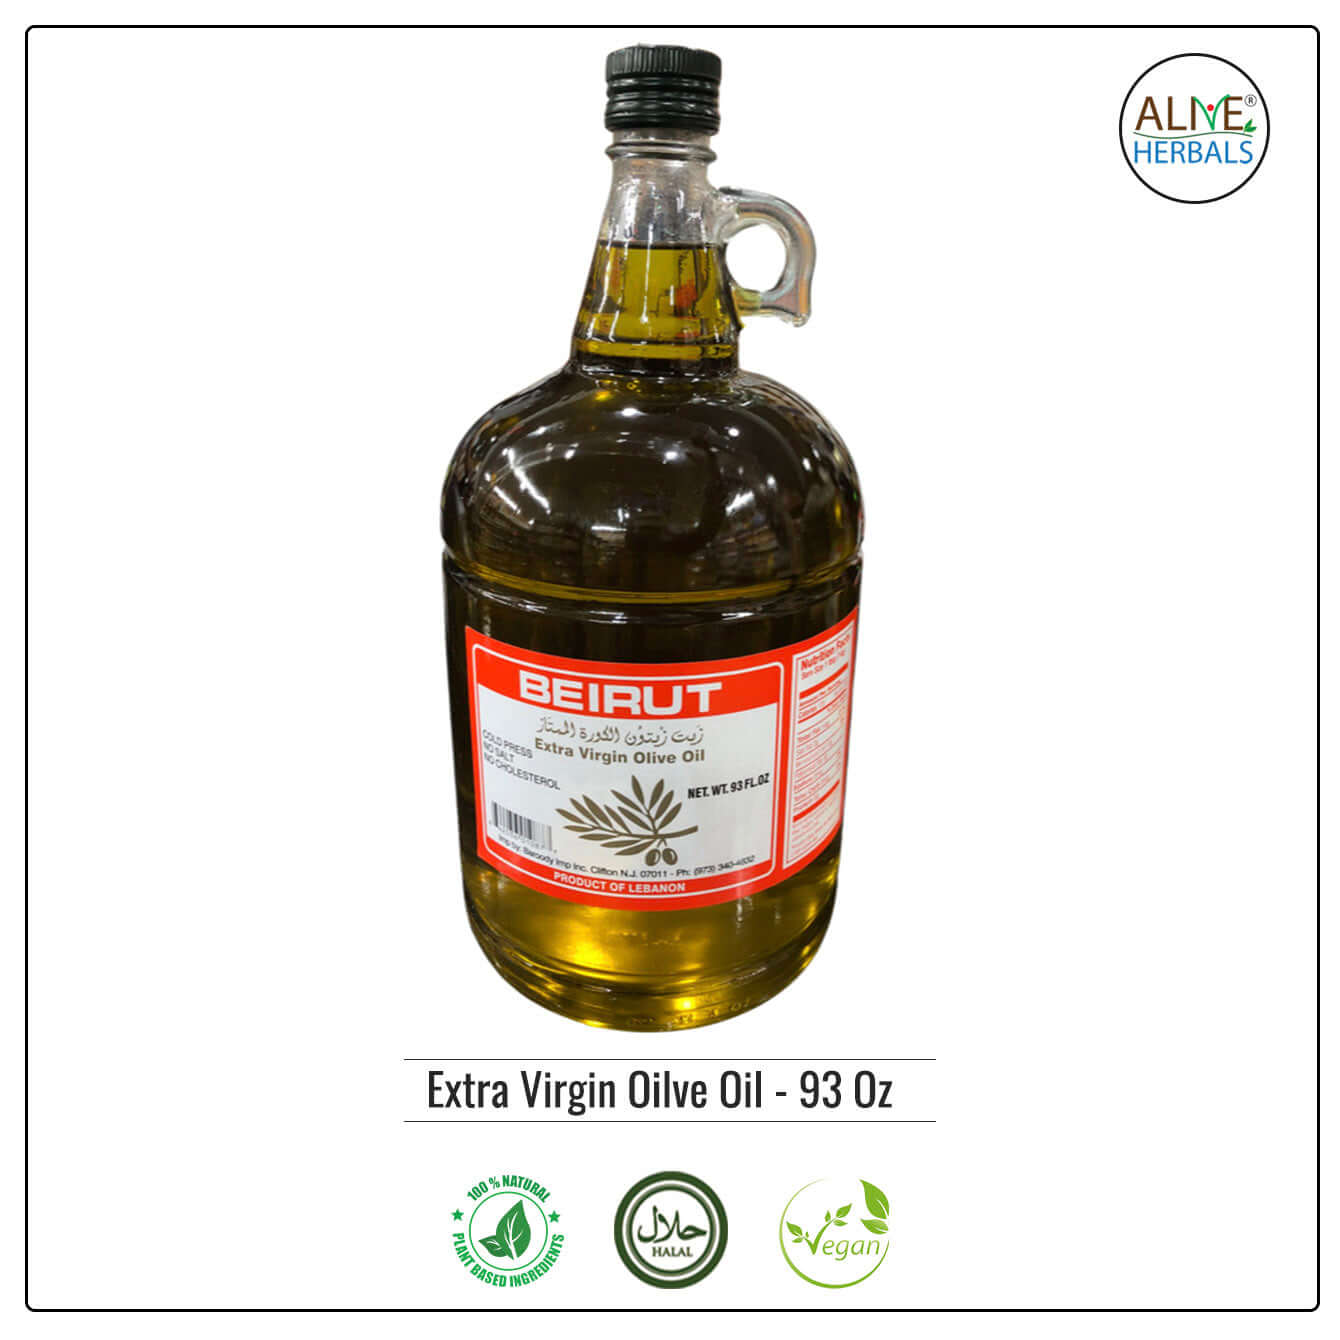 Extra Virgin Olive Oil - Beirut